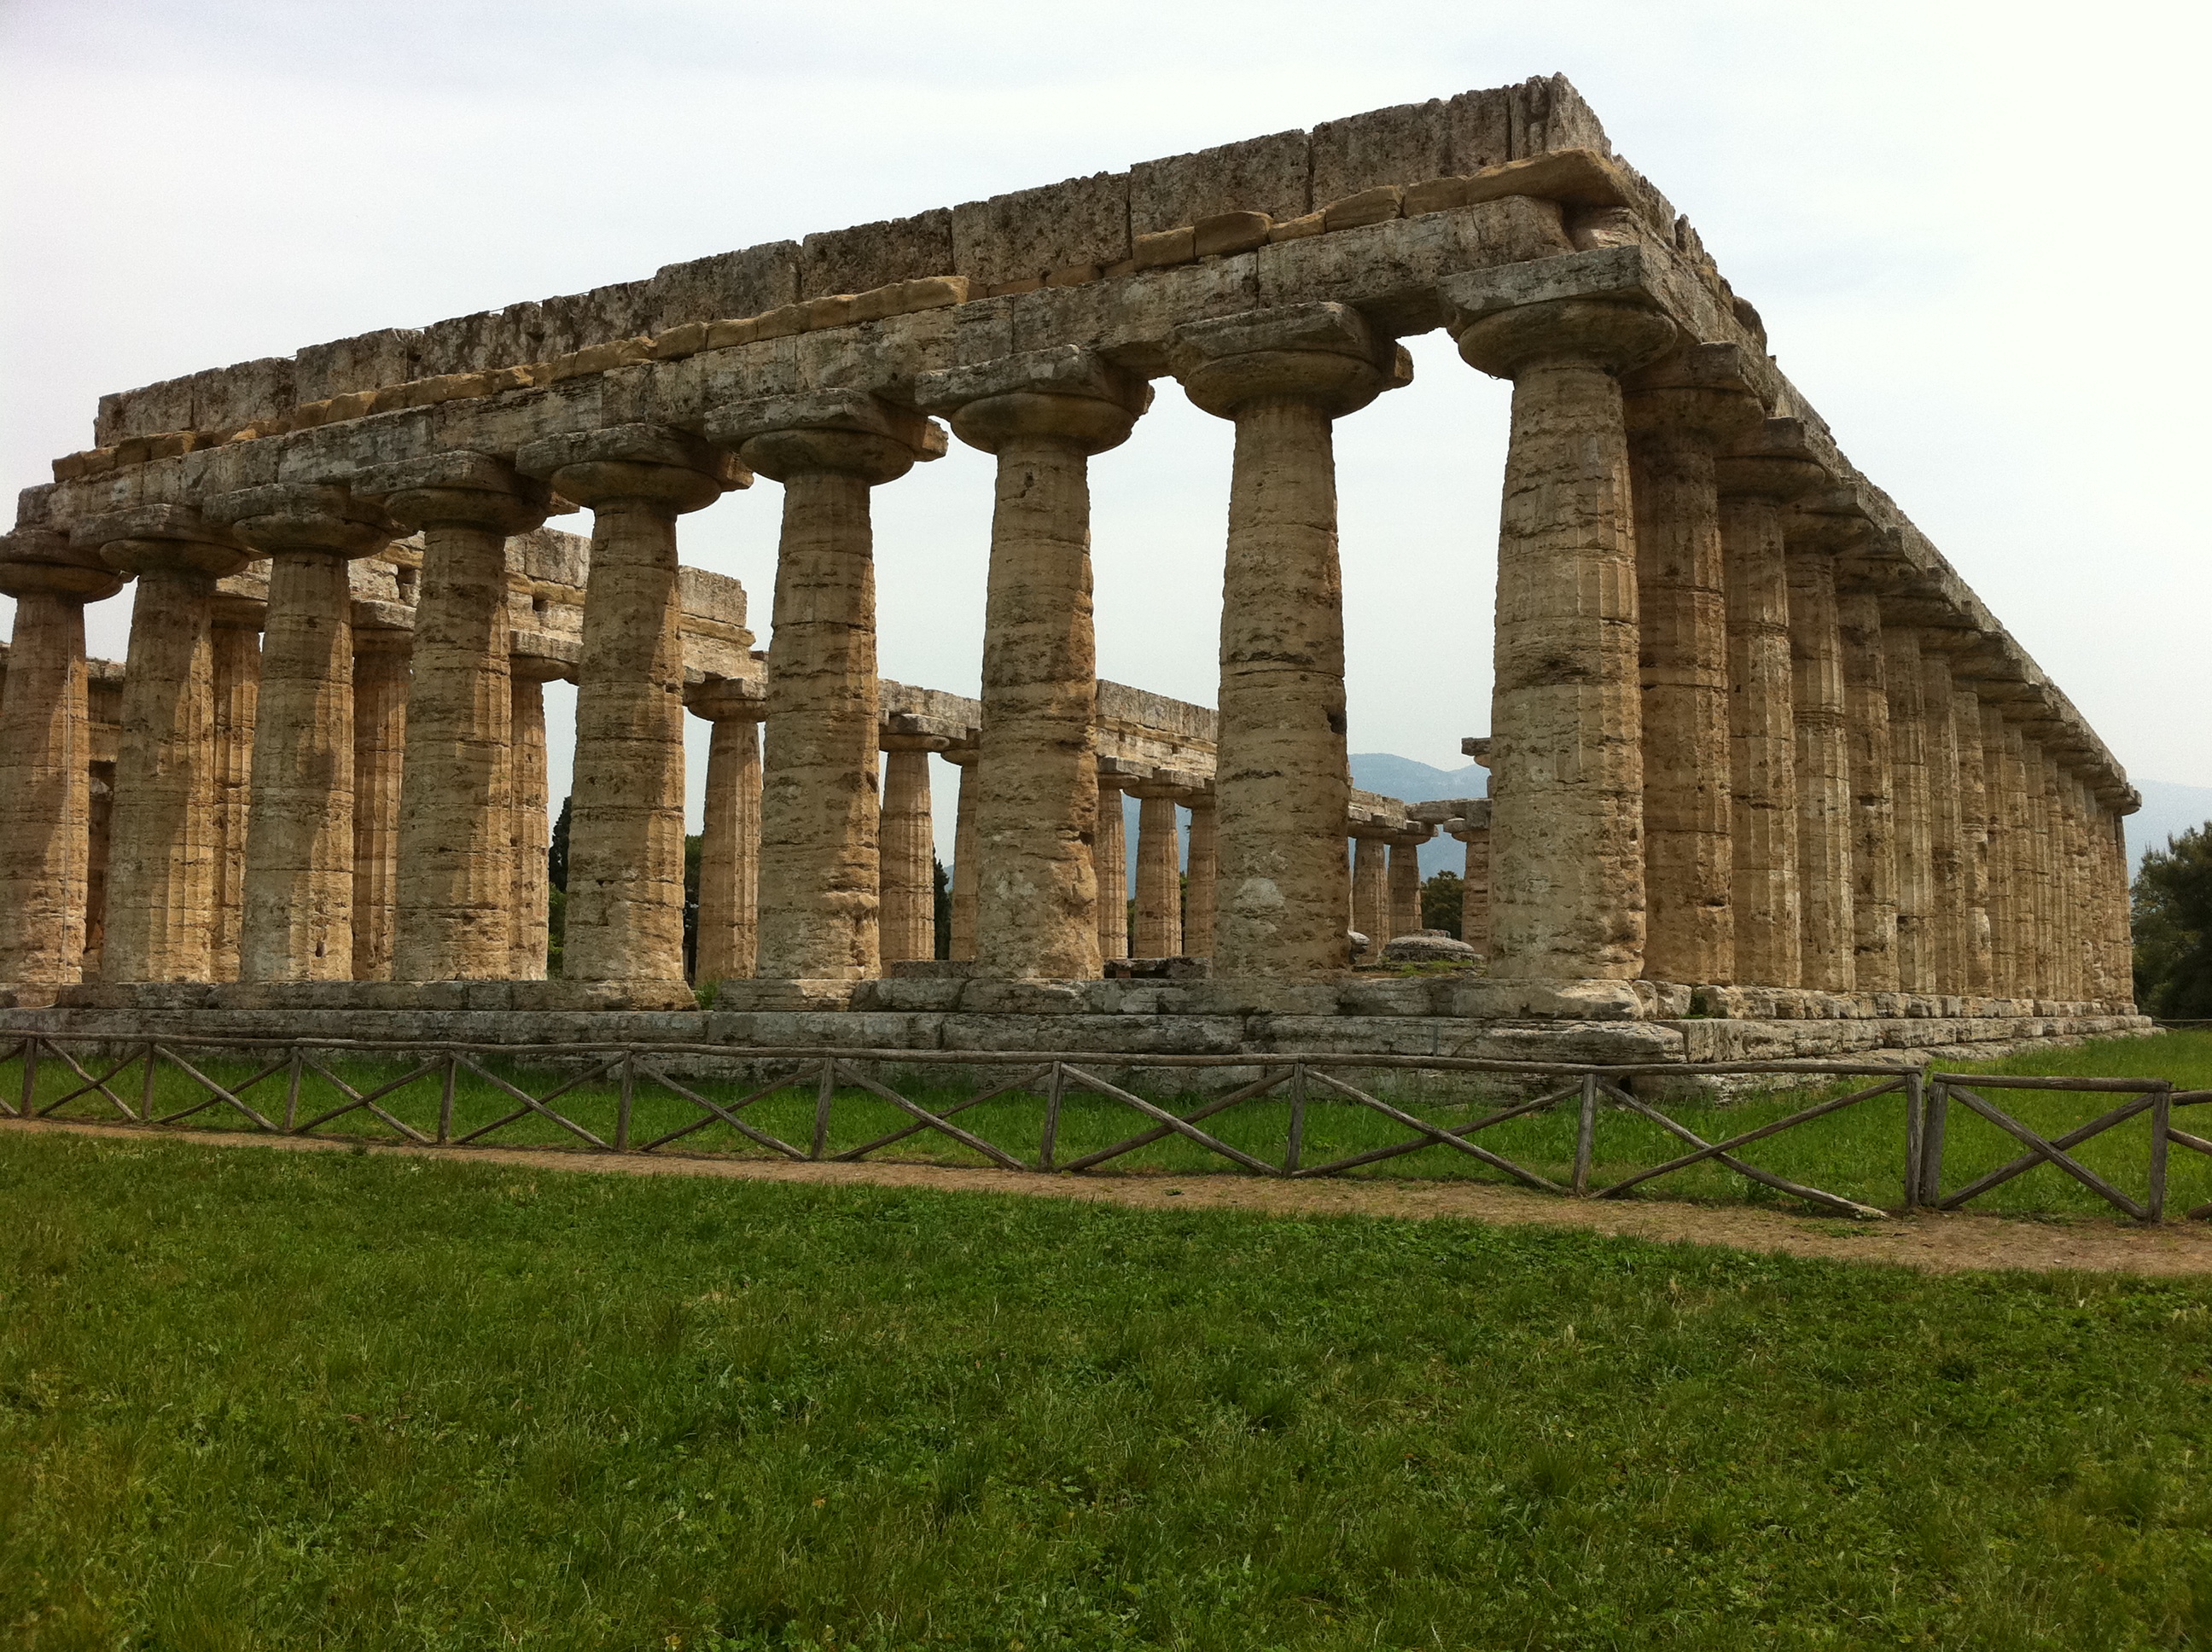 Temple of Hera at Paestum